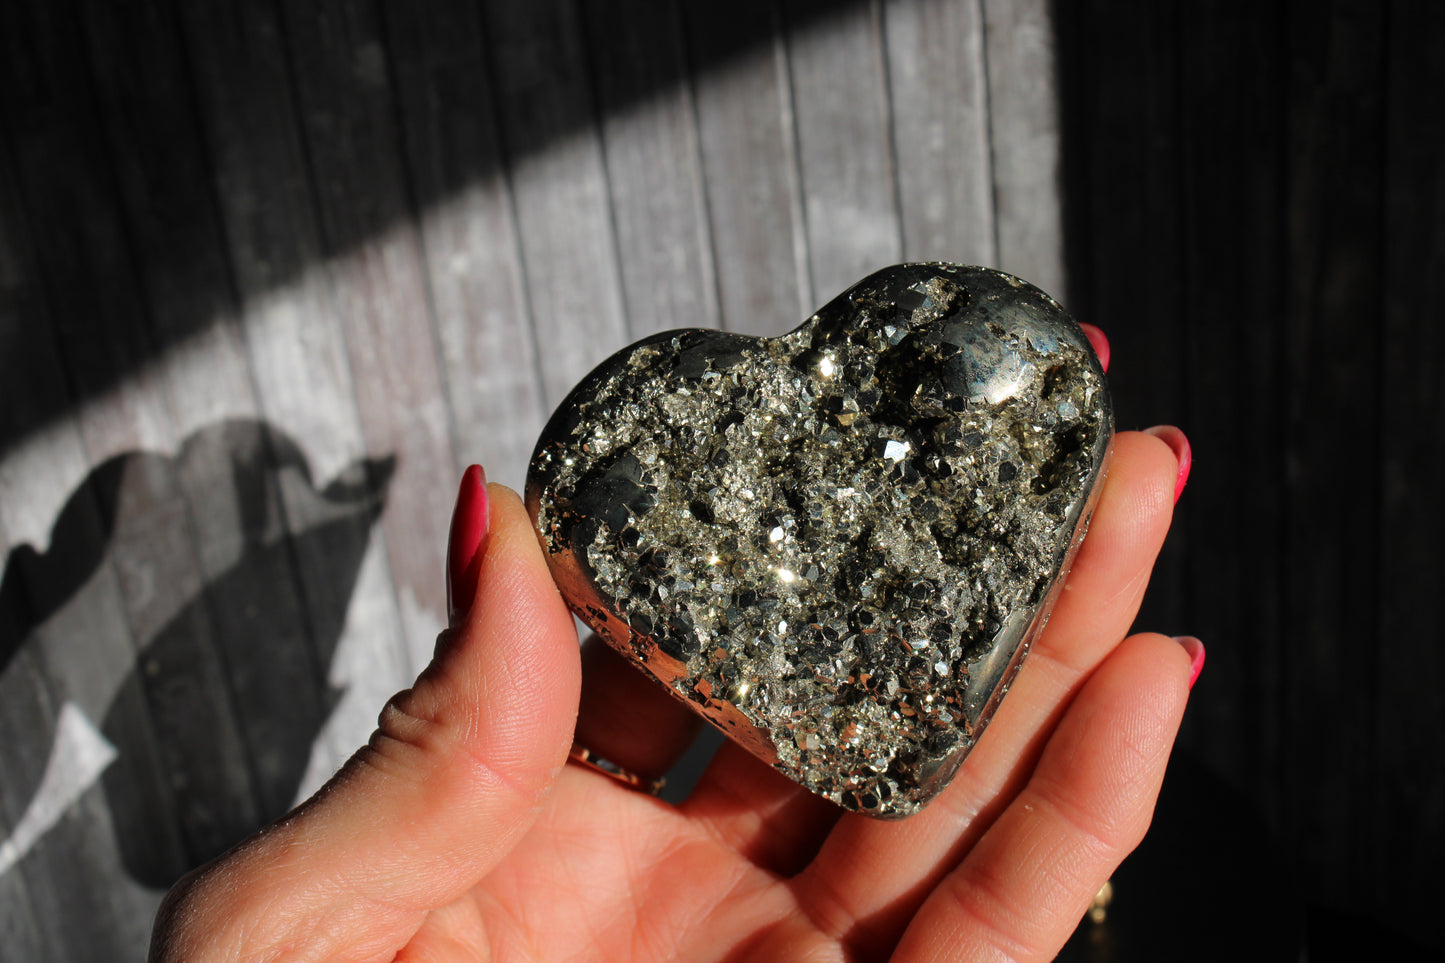 1 coeur en pyrite - SANS SOCLE "E"